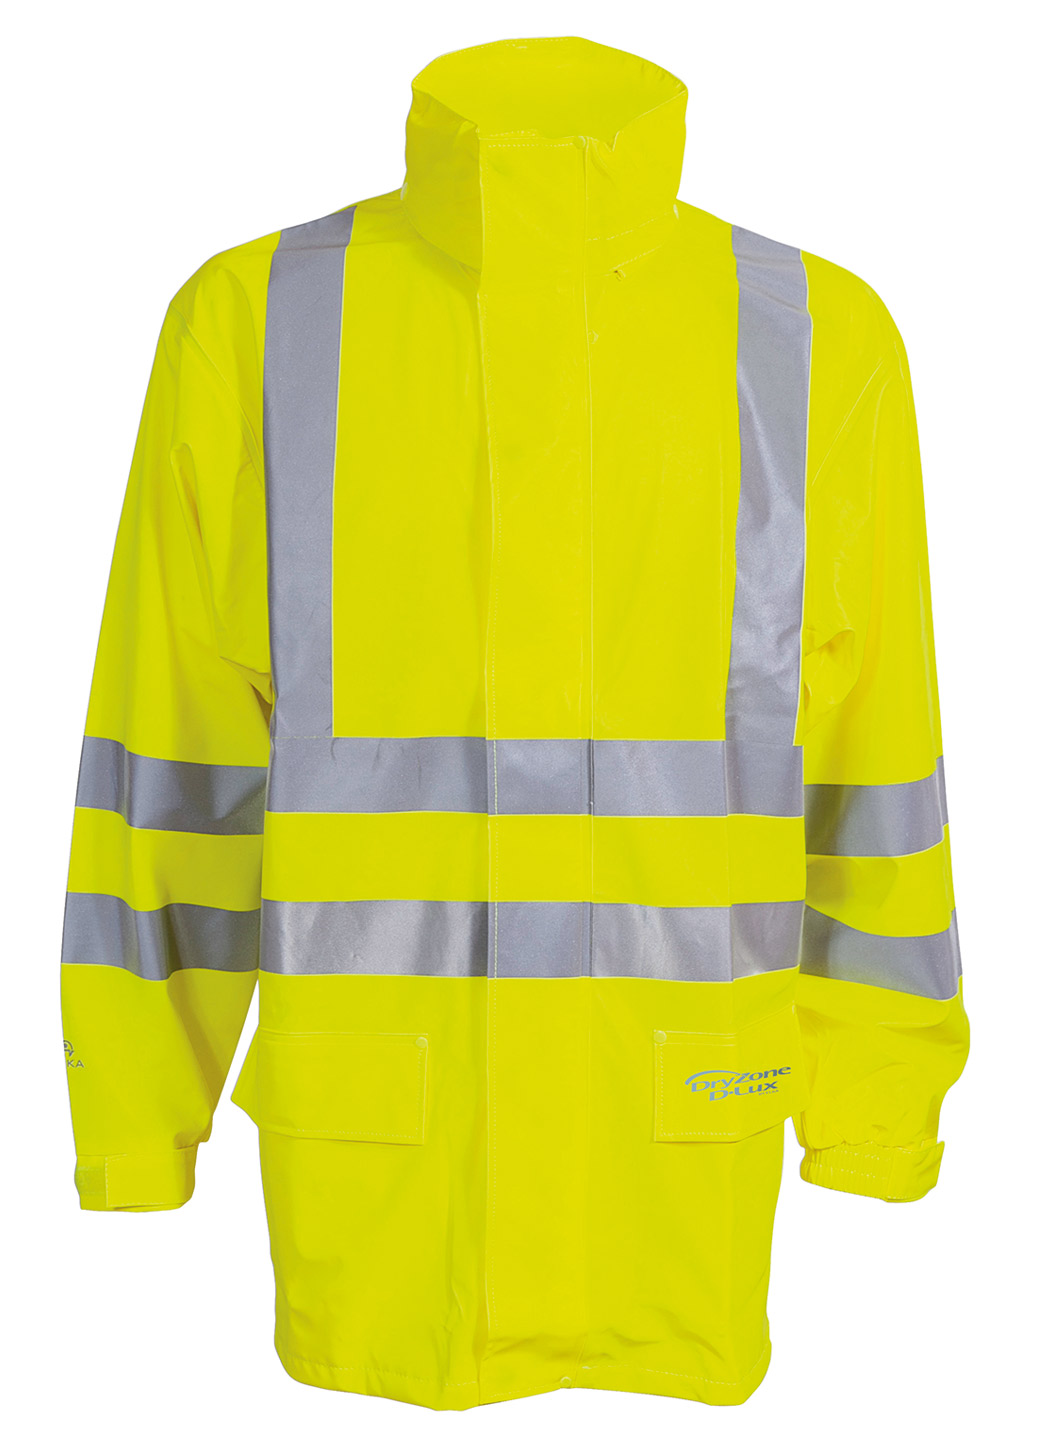 ELKA-Regenschutz, -D-LUX-Regen-Nässe-Wetter-Schutz-Jacke,EN 471, DRY ZONE, 170g/m², warngelb